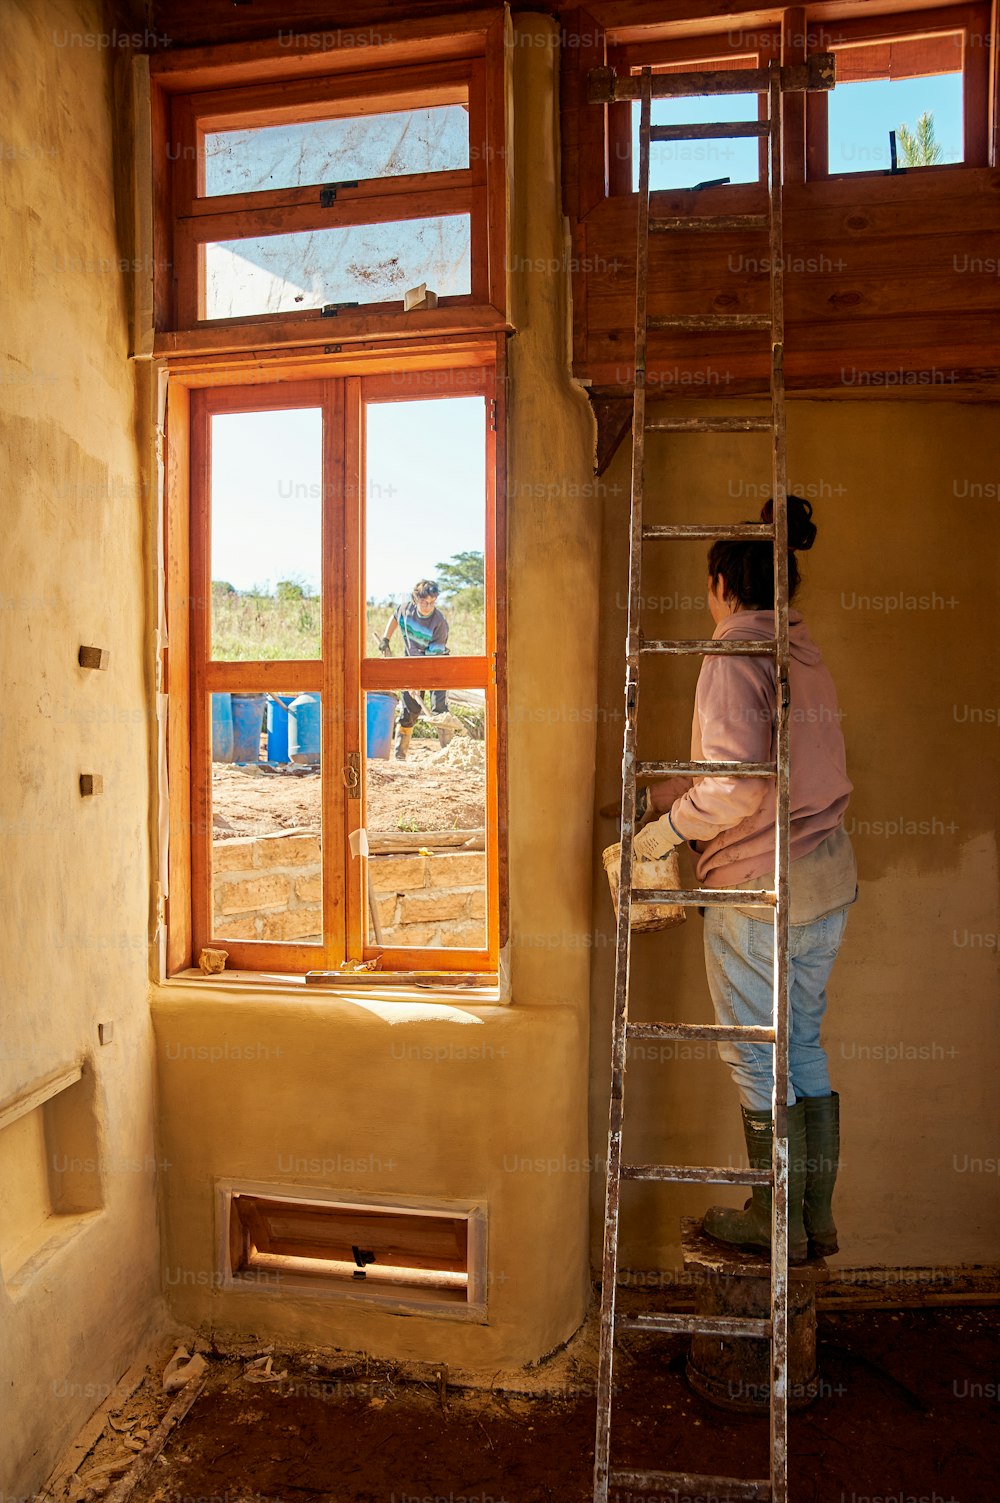 Una mujer parada en una escalera frente a una ventana